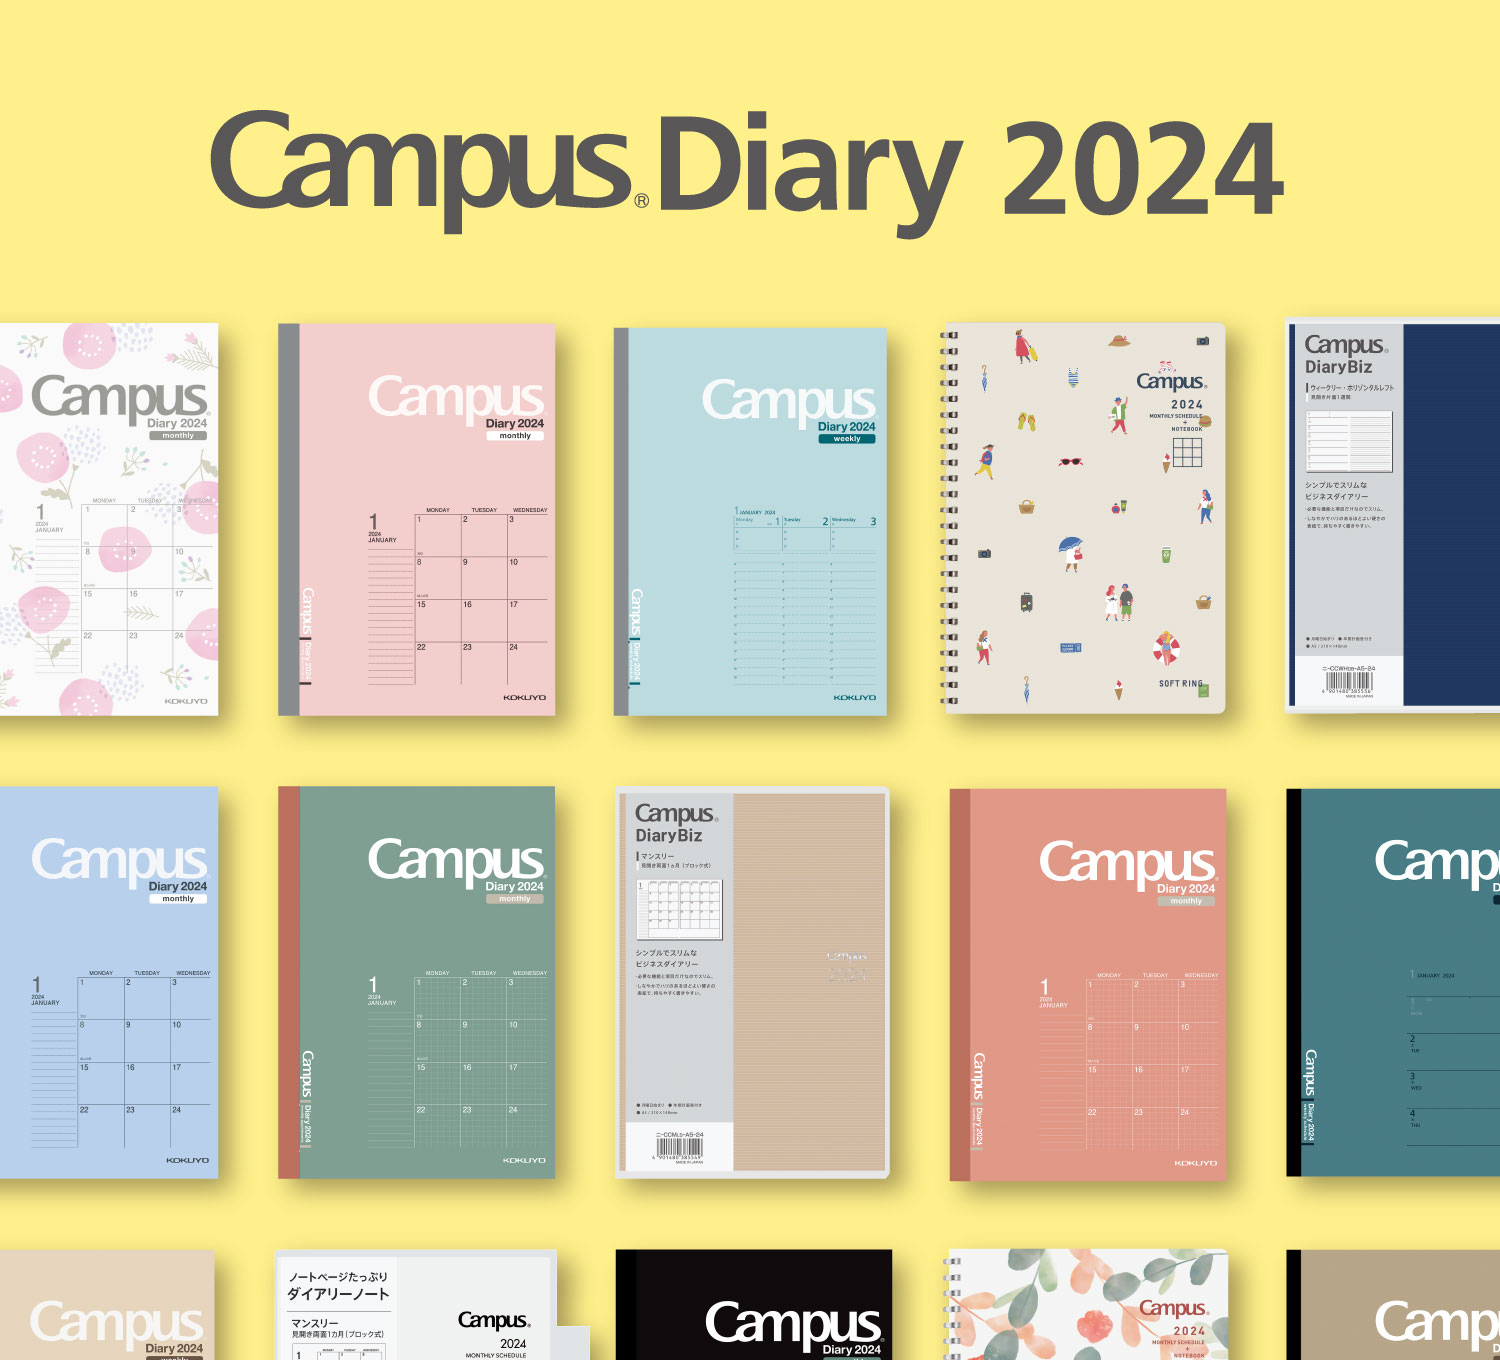 Campus Diary 2024